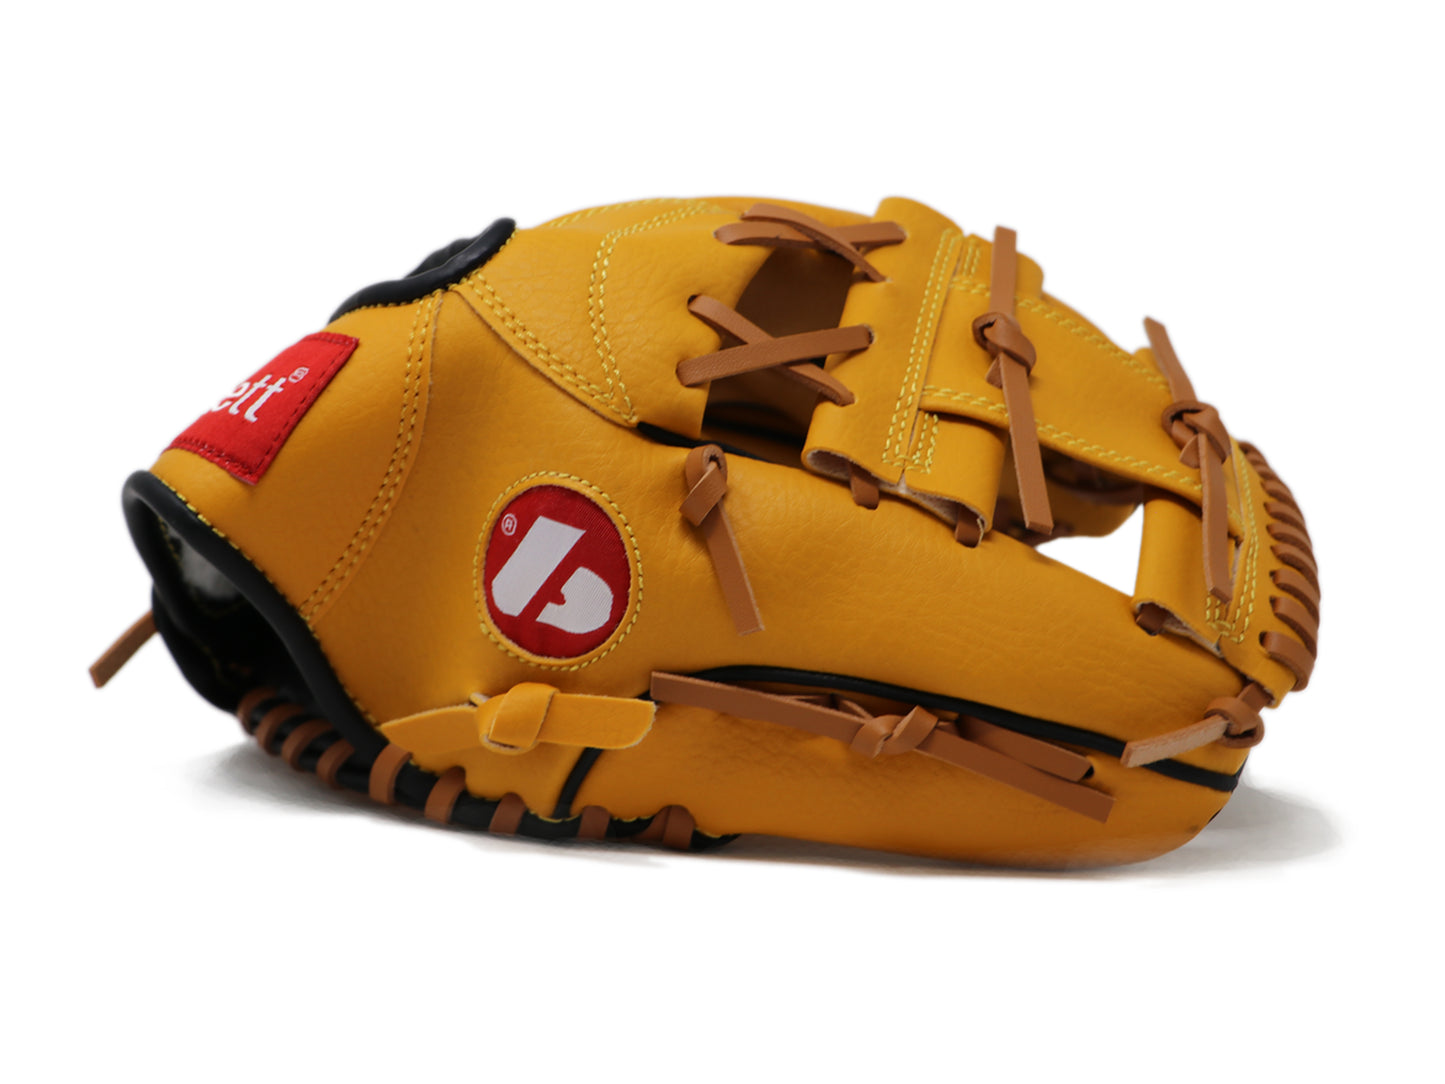 JL-115 - Baseballová rukavice, Outfield, 11,5", HNĚDÁ